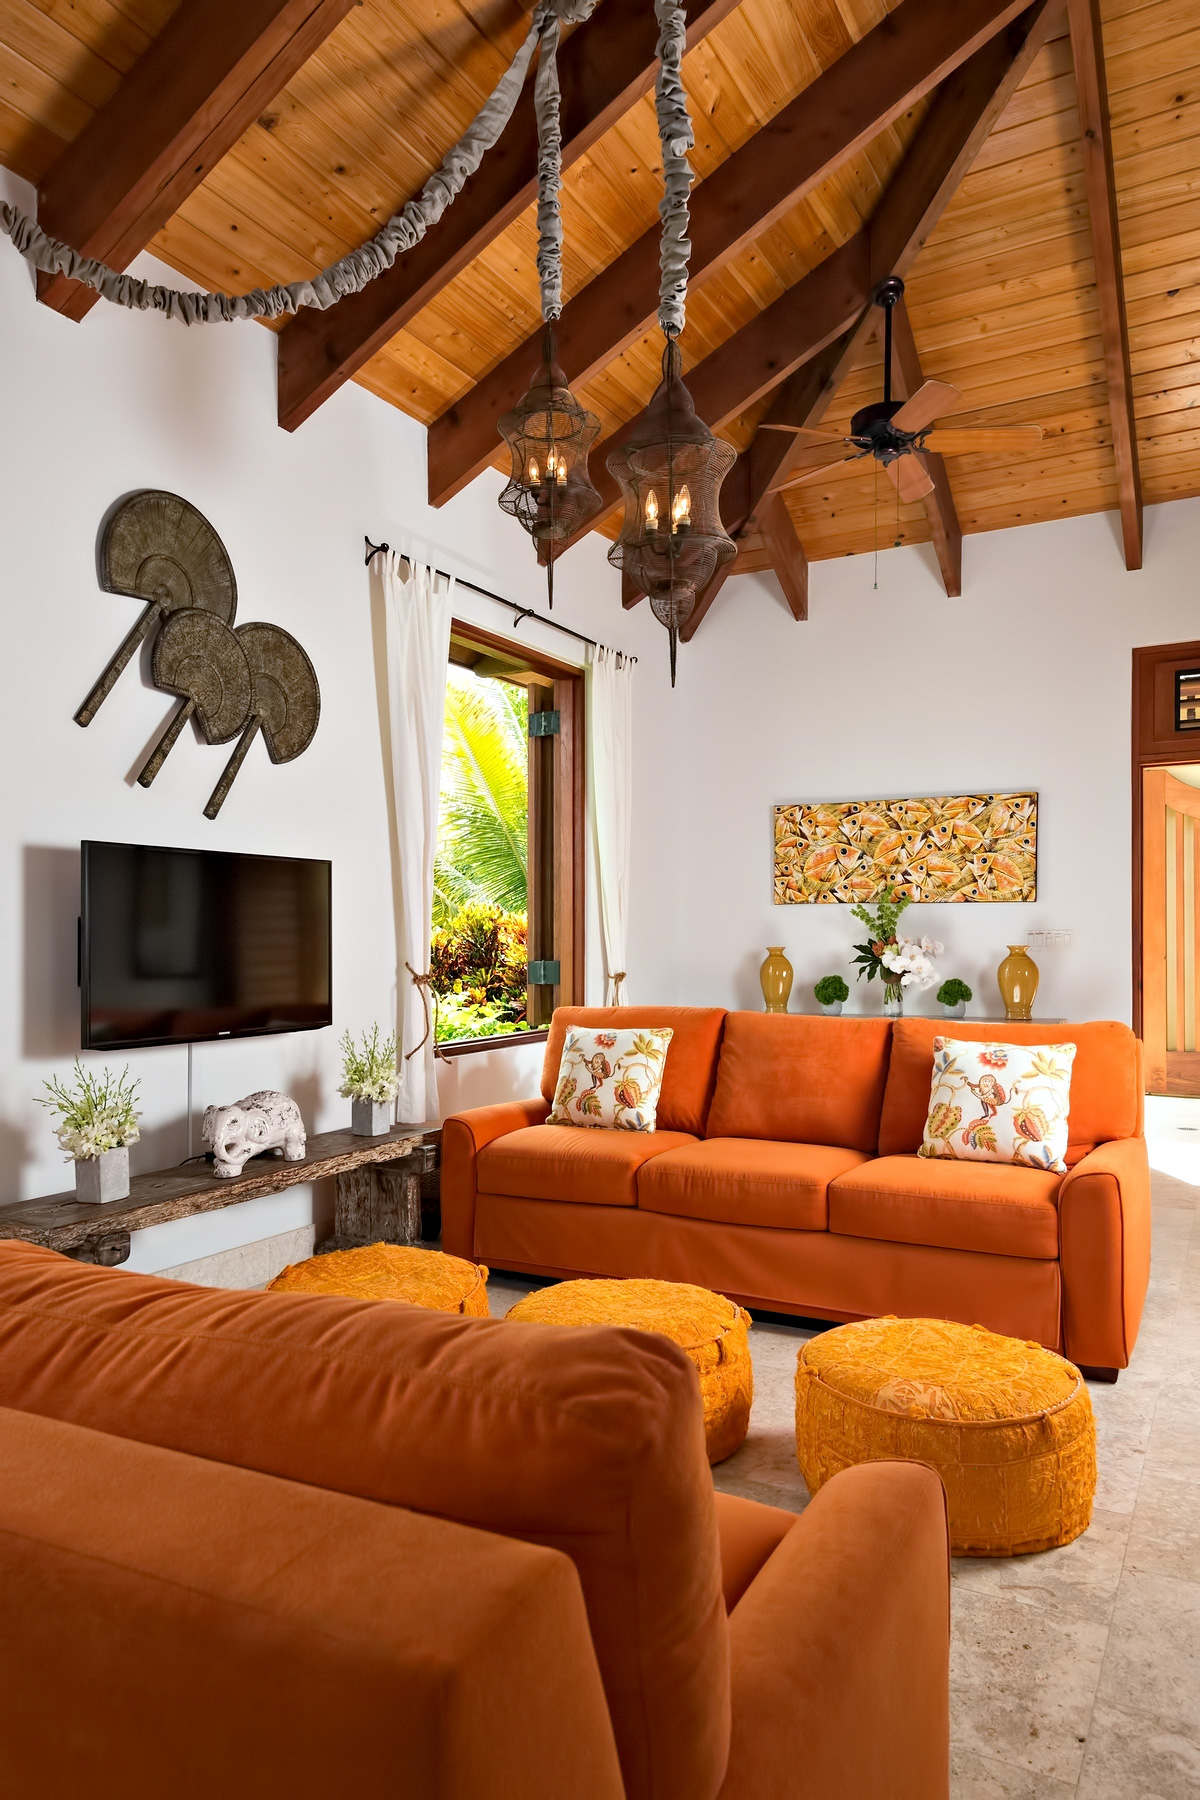 Luxury Villa Alamandra – Providenciales, Turks and Caicos Islands